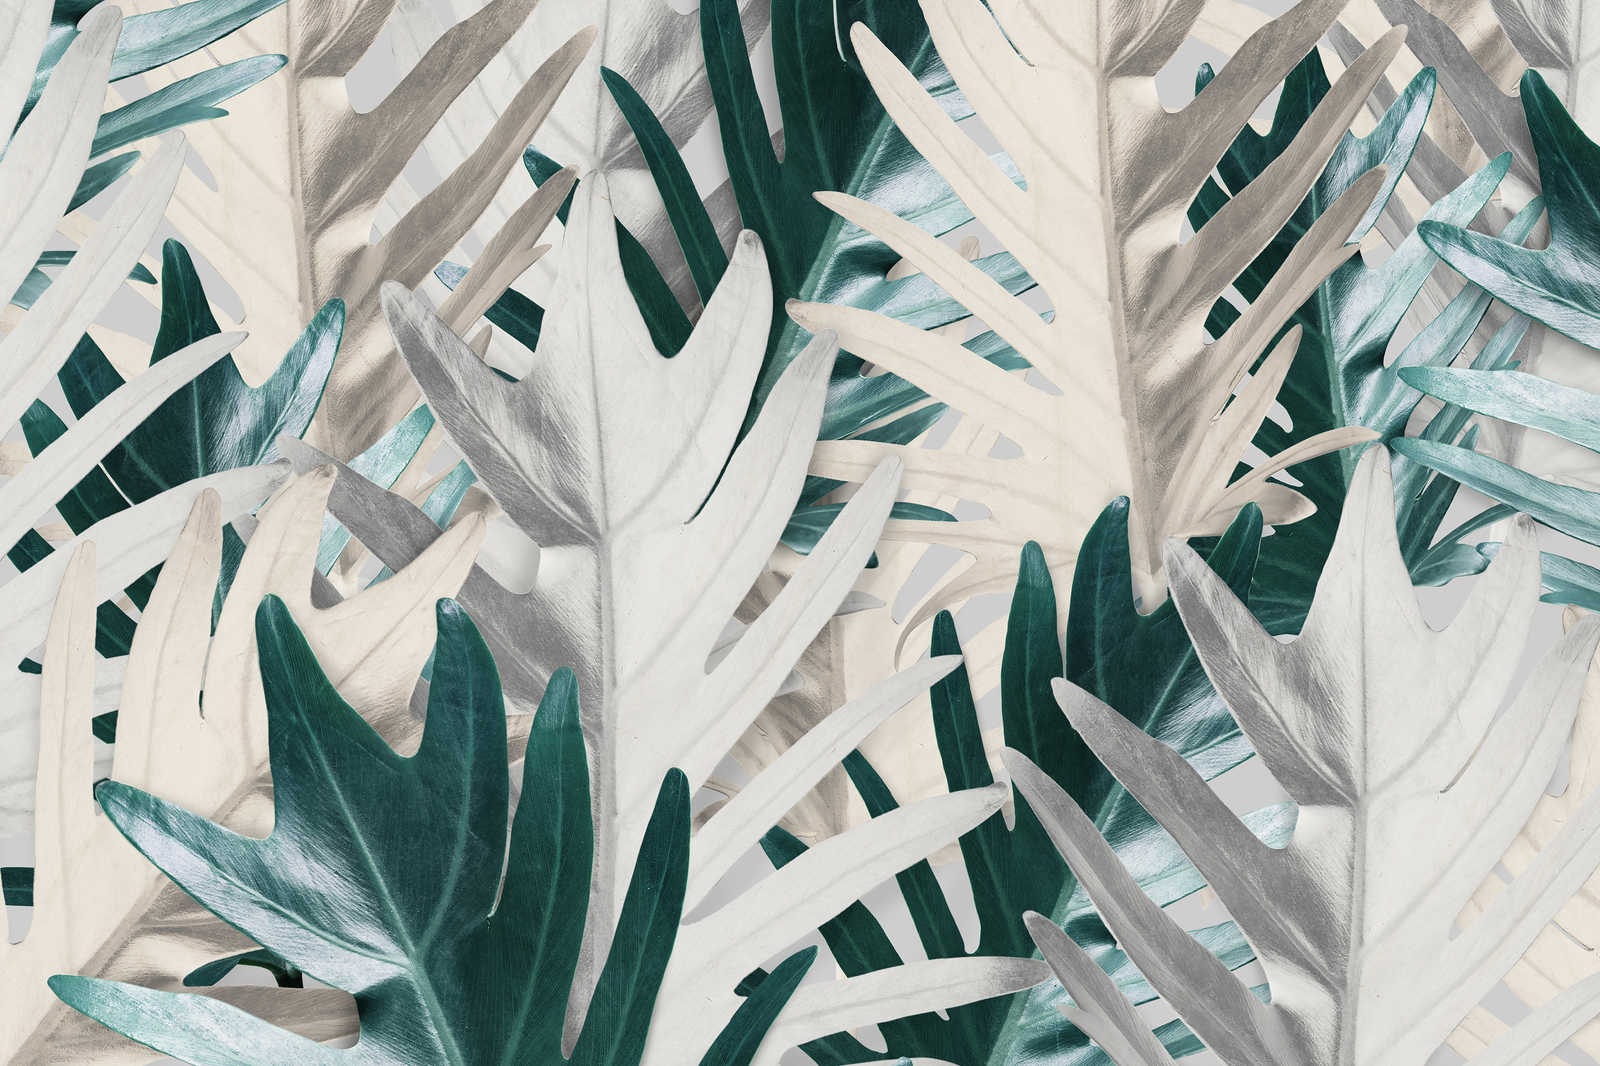             Quadro su tela con foglie di palma tropicali - 0,90 m x 0,60 m
        